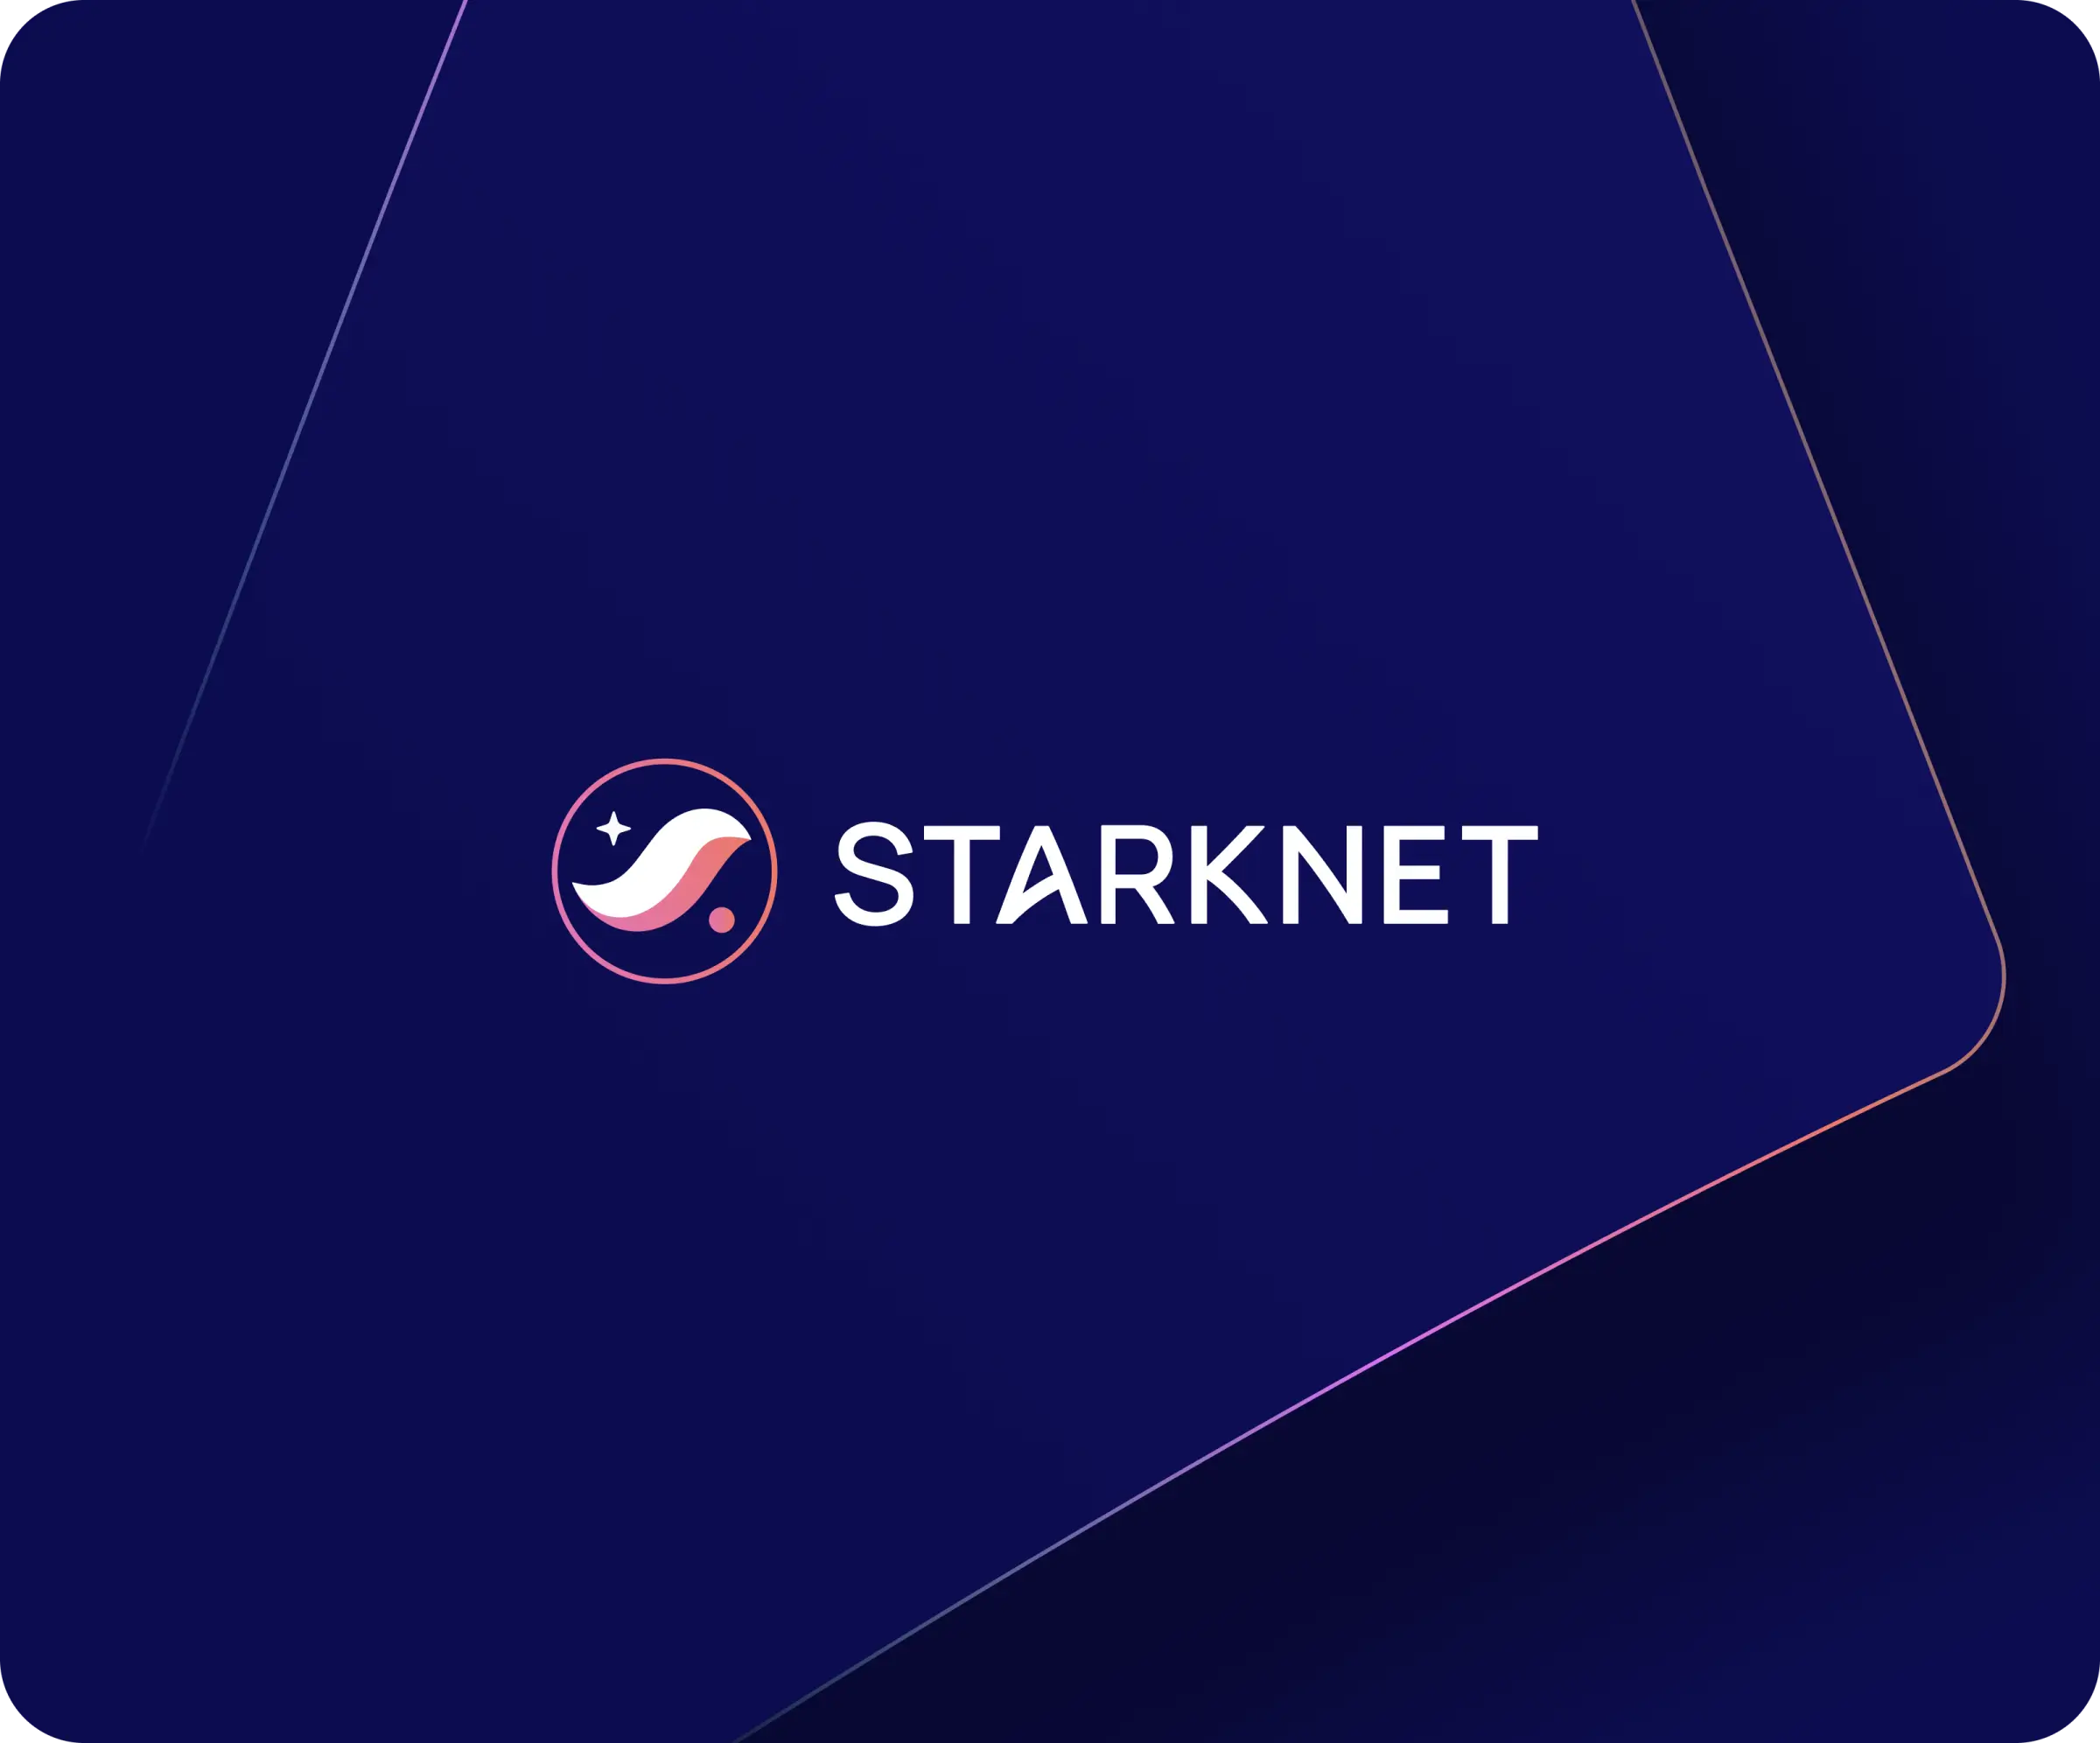 Starknet.io / Starknet Brand